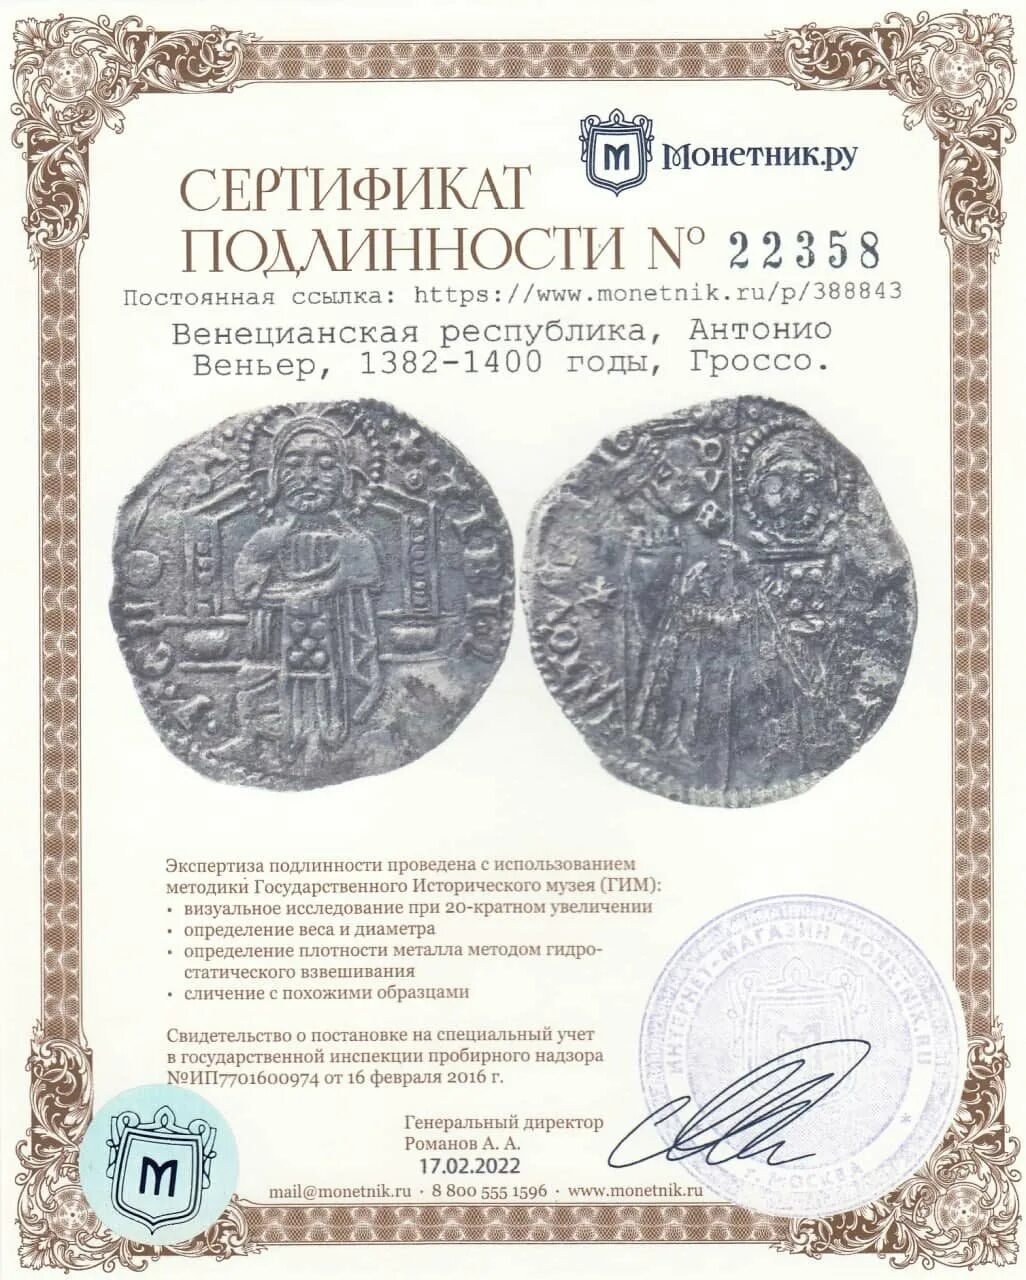 Рубль 1400 года. Гроссо монета. Монеты венецианской Республики. Монеты 1400 года. Венецианская монета газета.